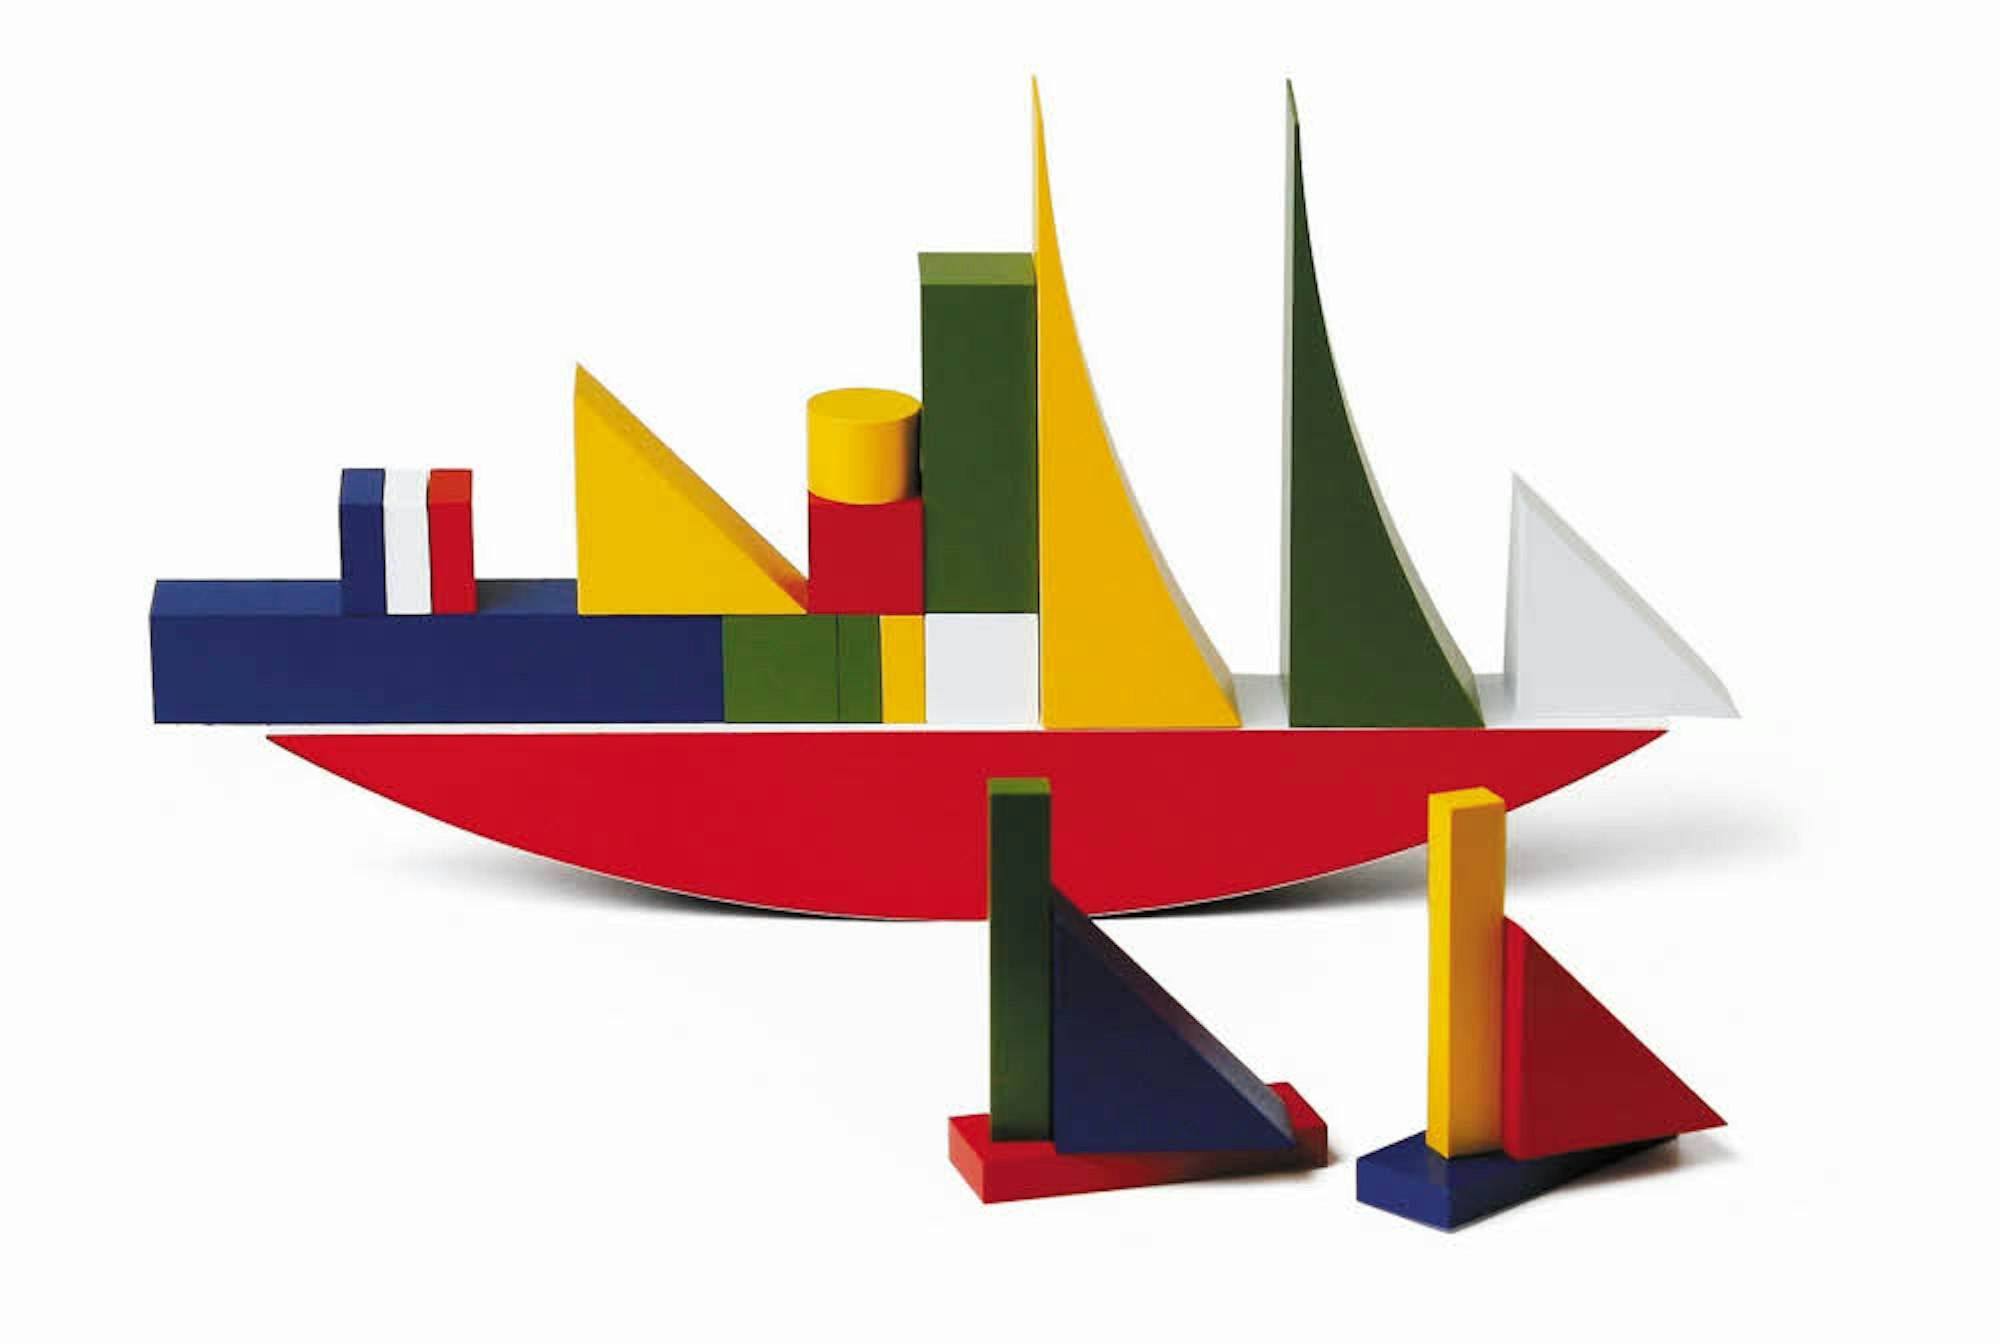 So farbenfroh wie das Bauspiel-Schiff von Alma Siedhoff-Buscher waren viele Bauhaus-Entwürfe.